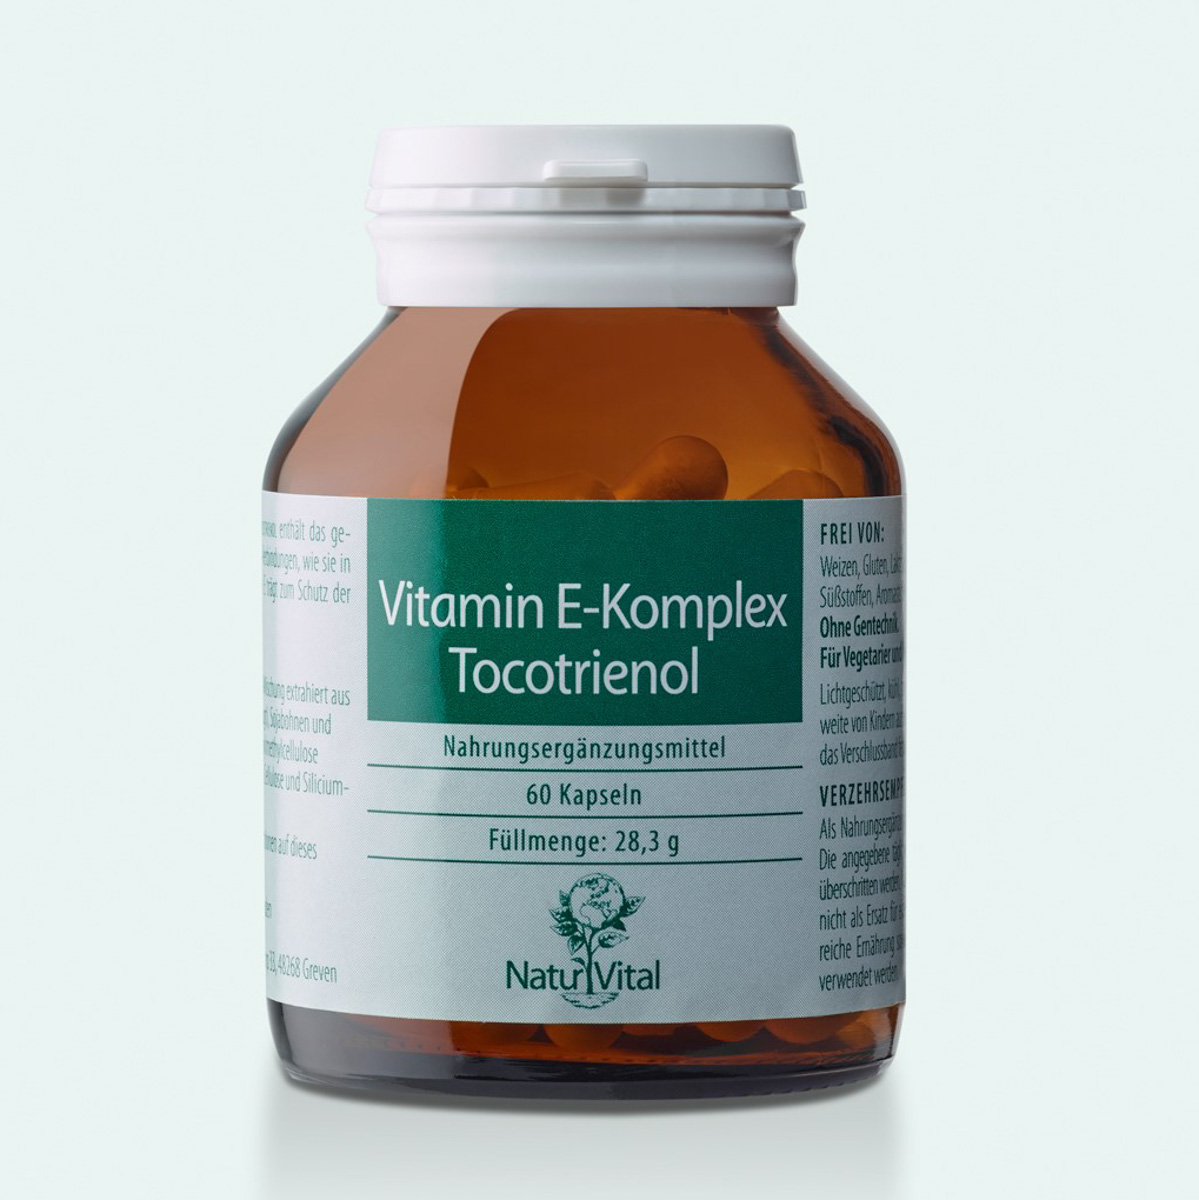 Vitamin E-Komplex Tocotrienol 60 Kaps.